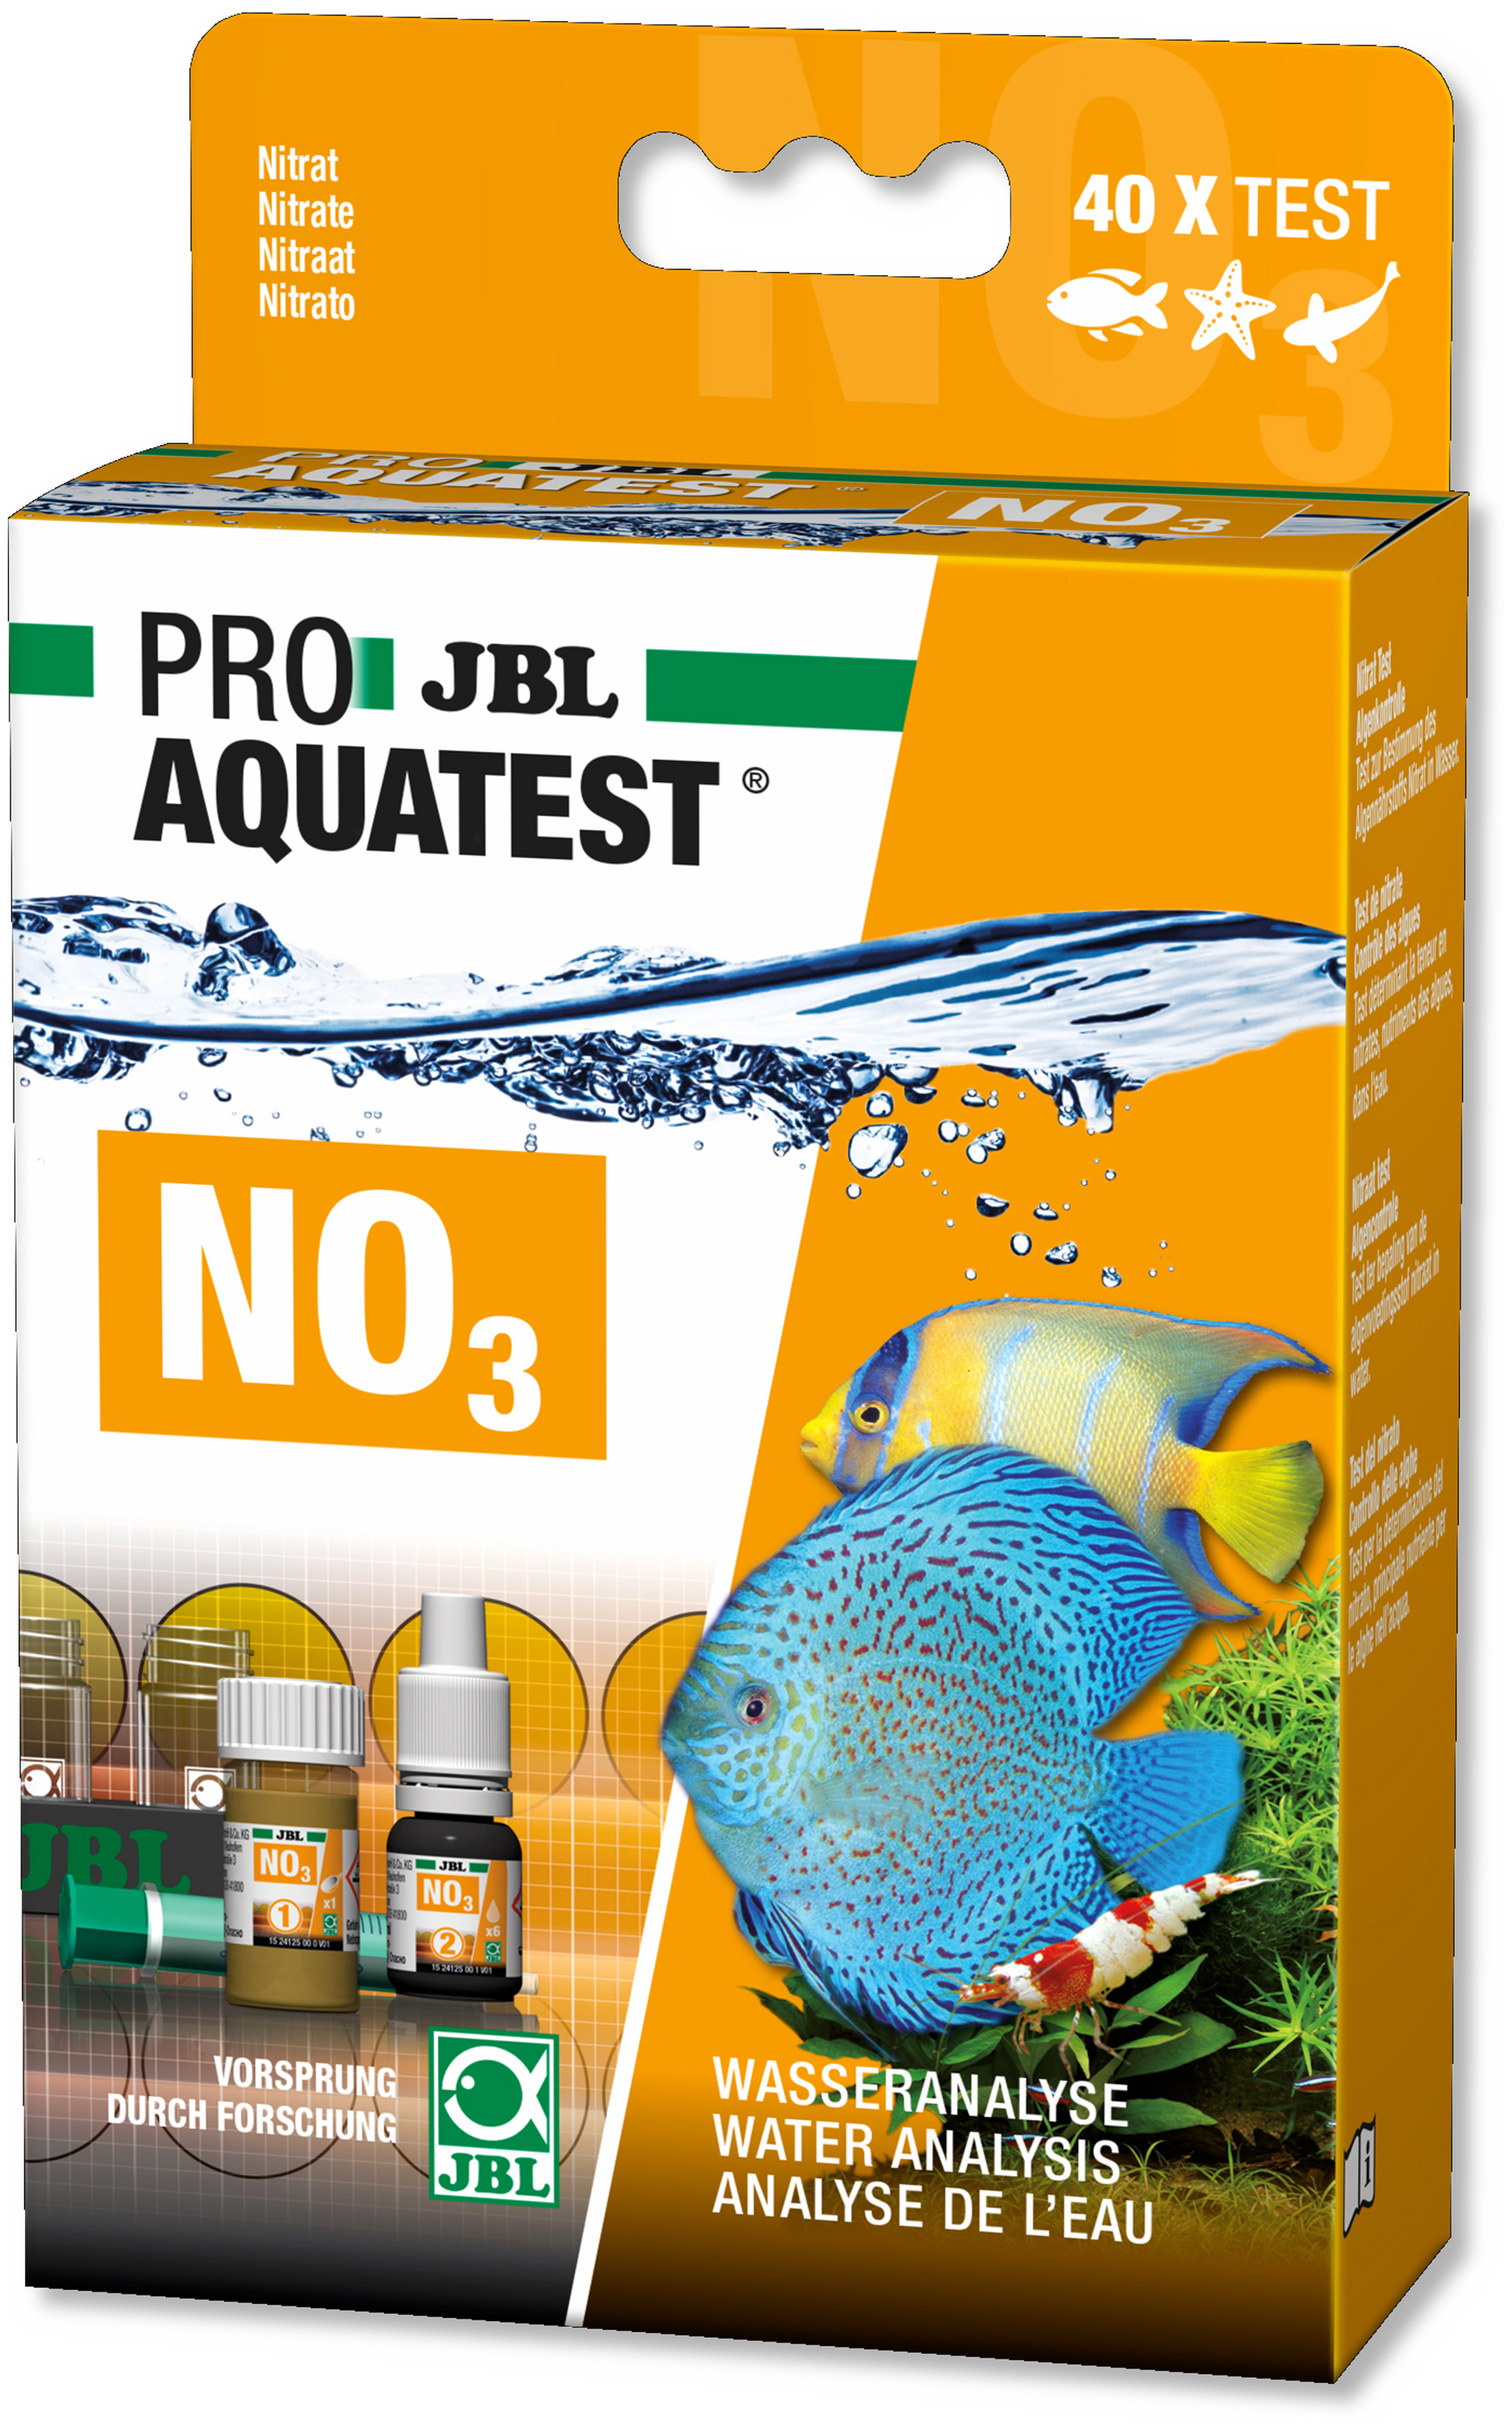 JBL Pro Aquatest PO4 (fosfaat) Sensitive - Test-Set